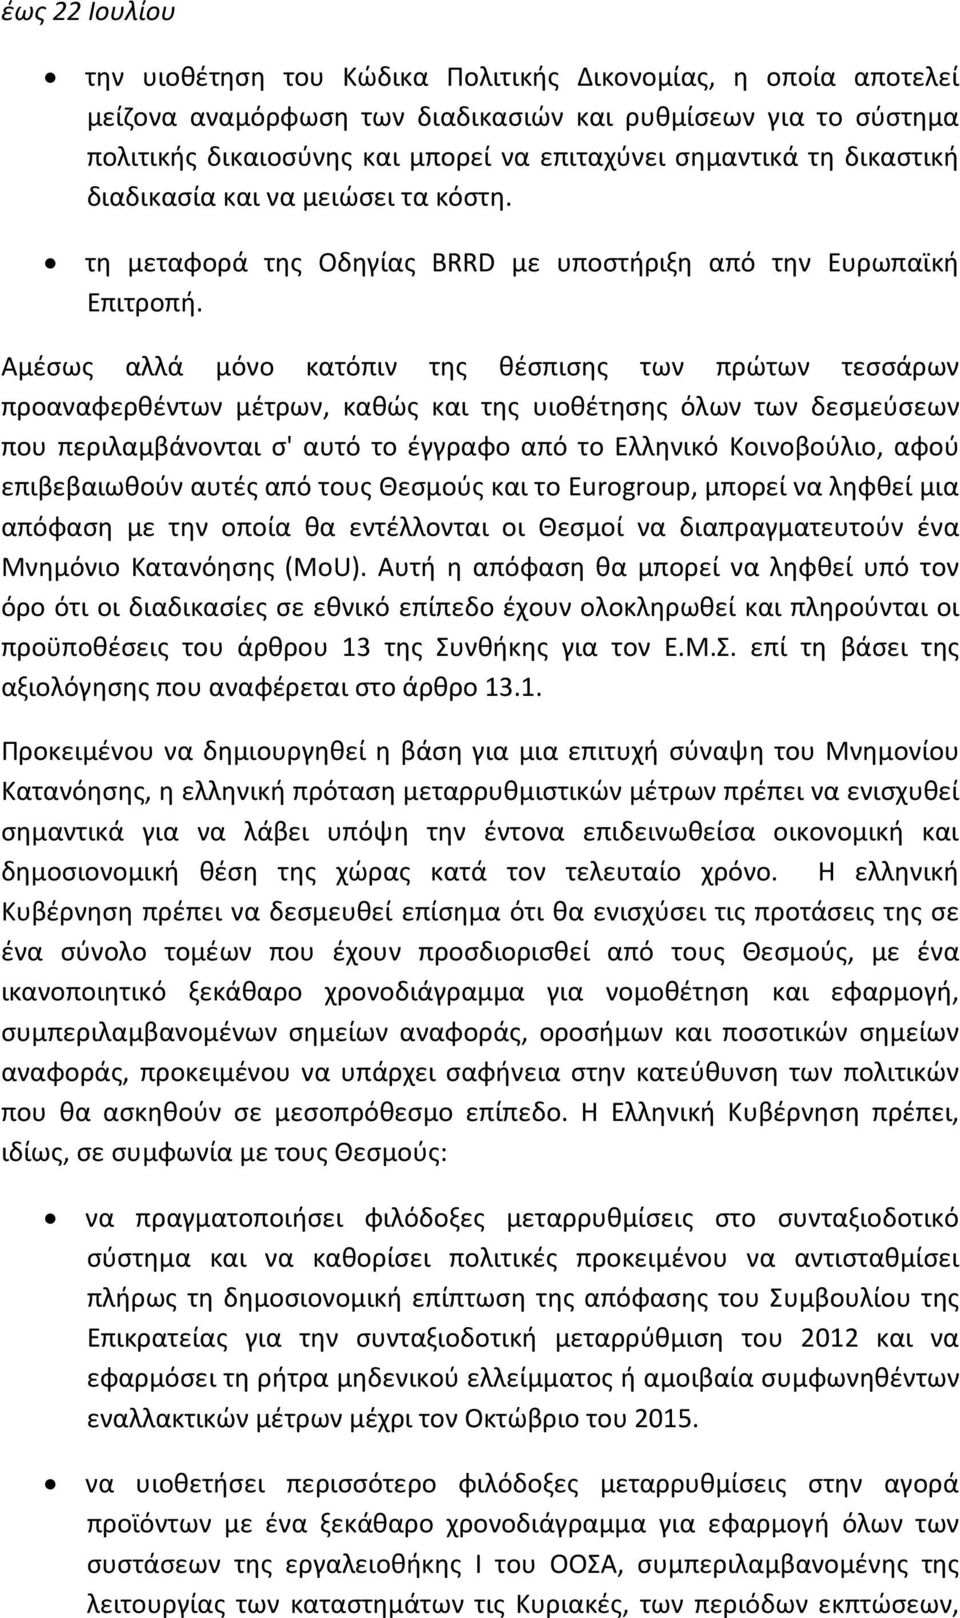 Αμέσως αλλά μόνο κατόπιν της θέσπισης των πρώτων τεσσάρων προαναφερθέντων μέτρων, καθώς και της υιοθέτησης όλων των δεσμεύσεων που περιλαμβάνονται σ' αυτό το έγγραφο από το Ελληνικό Κοινοβούλιο, αφού